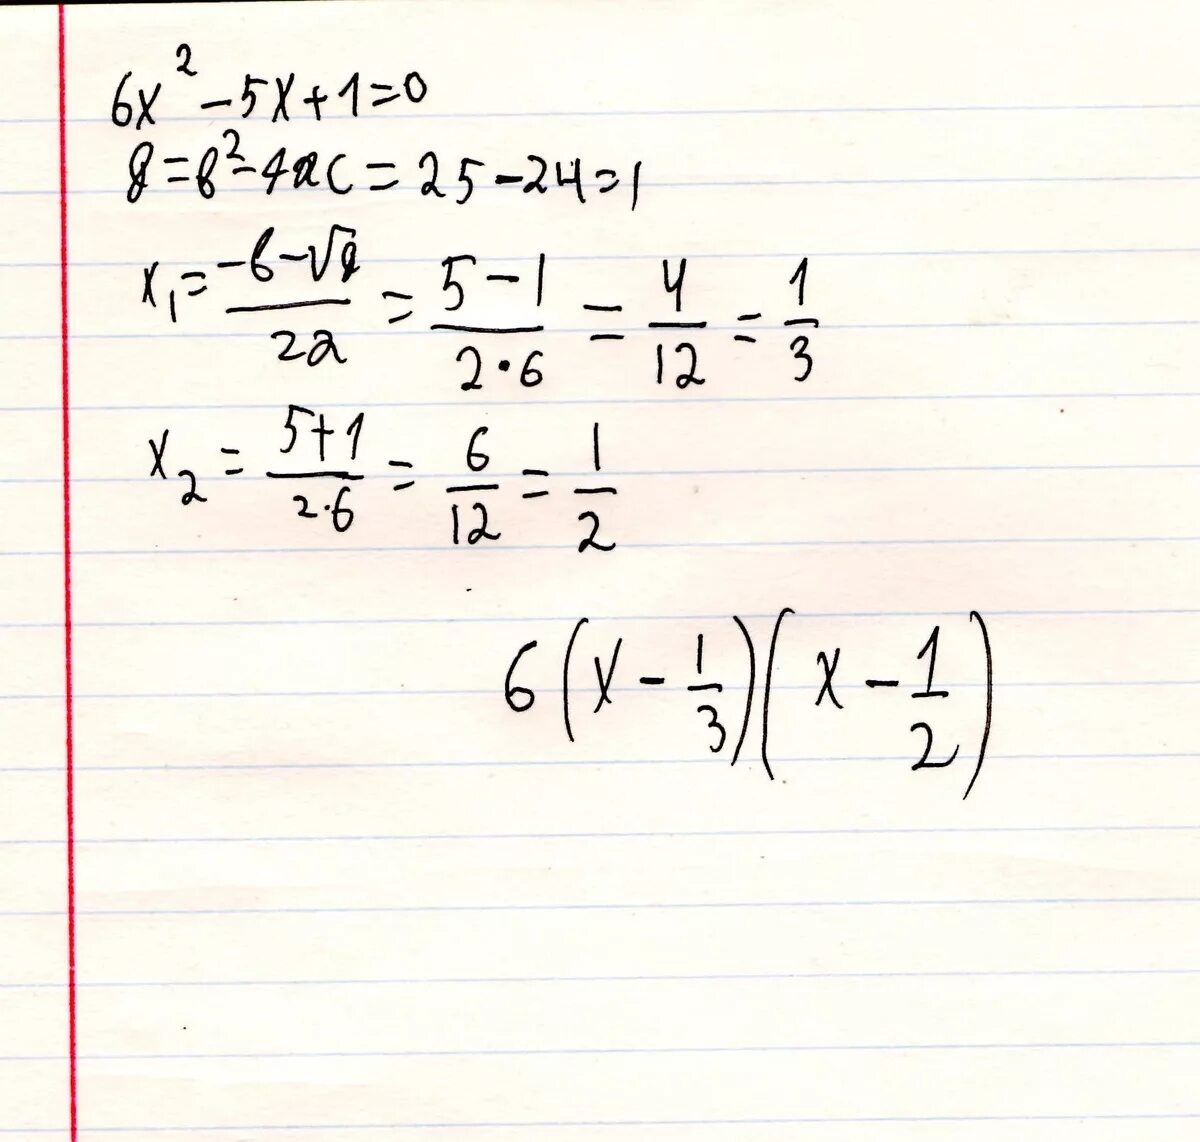 Разложите на множители квадратный трехчлен x2-5x+6. Разложите на множители квадратный трехчлен 6x2-x-2. Разложение на множители квадратный трехчлен x^2-x-6. Разложите на множители квадратный трехчлен x2-5x+6 через дискриминант.